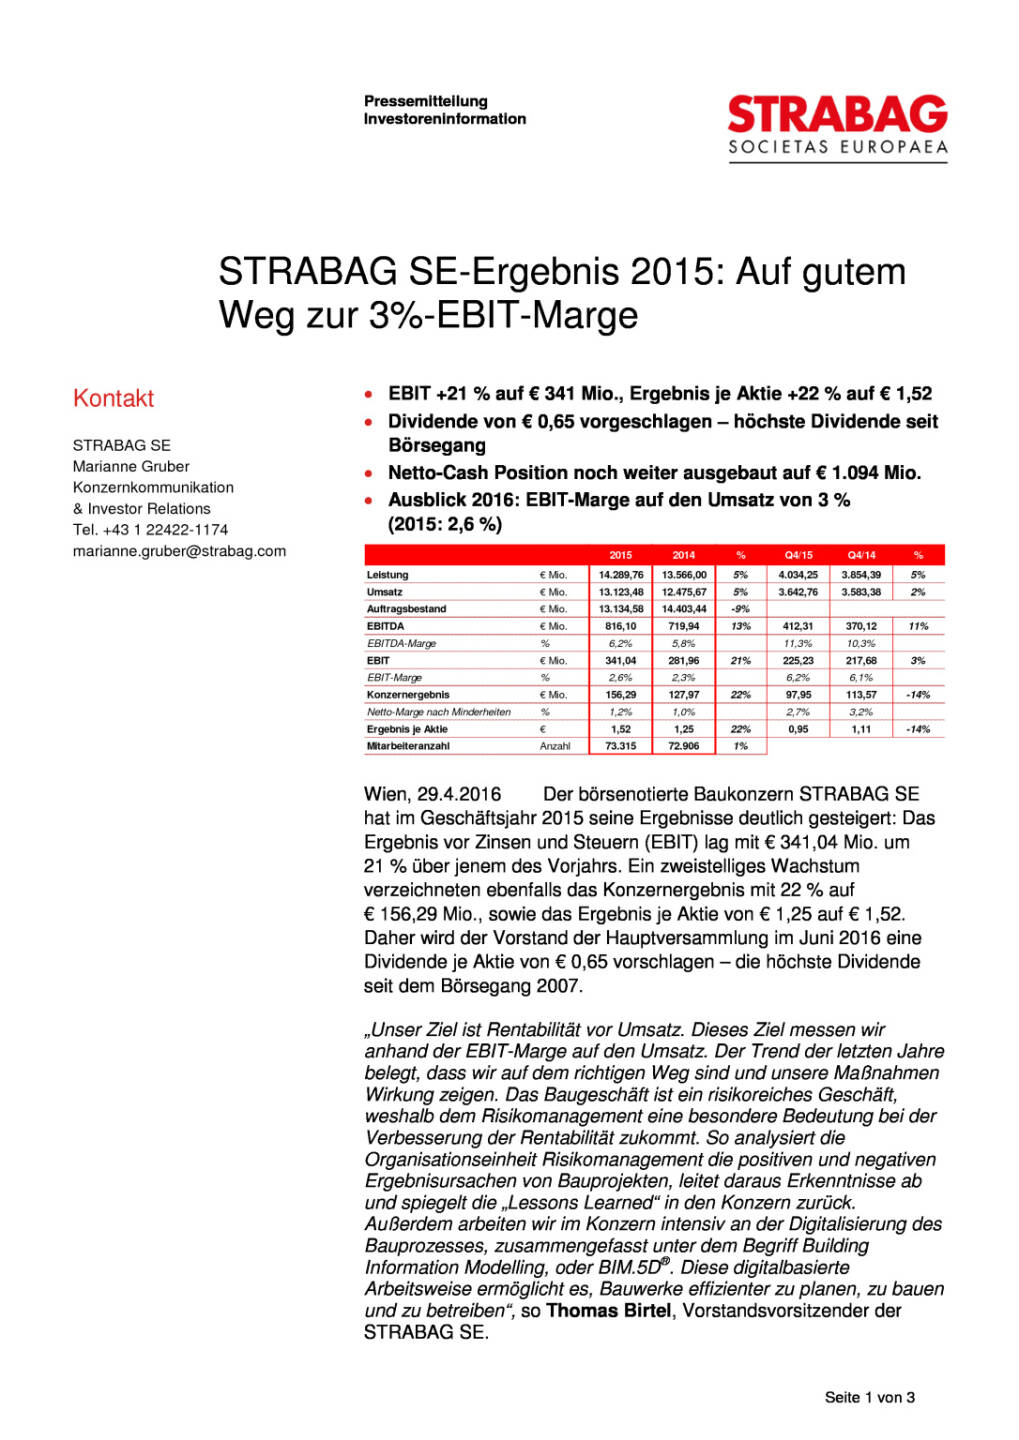 Strabag SE-Ergebnis 2015, Seite 1/3, komplettes Dokument unter http://boerse-social.com/static/uploads/file_973_strabag_se-ergebnis_2015.pdf